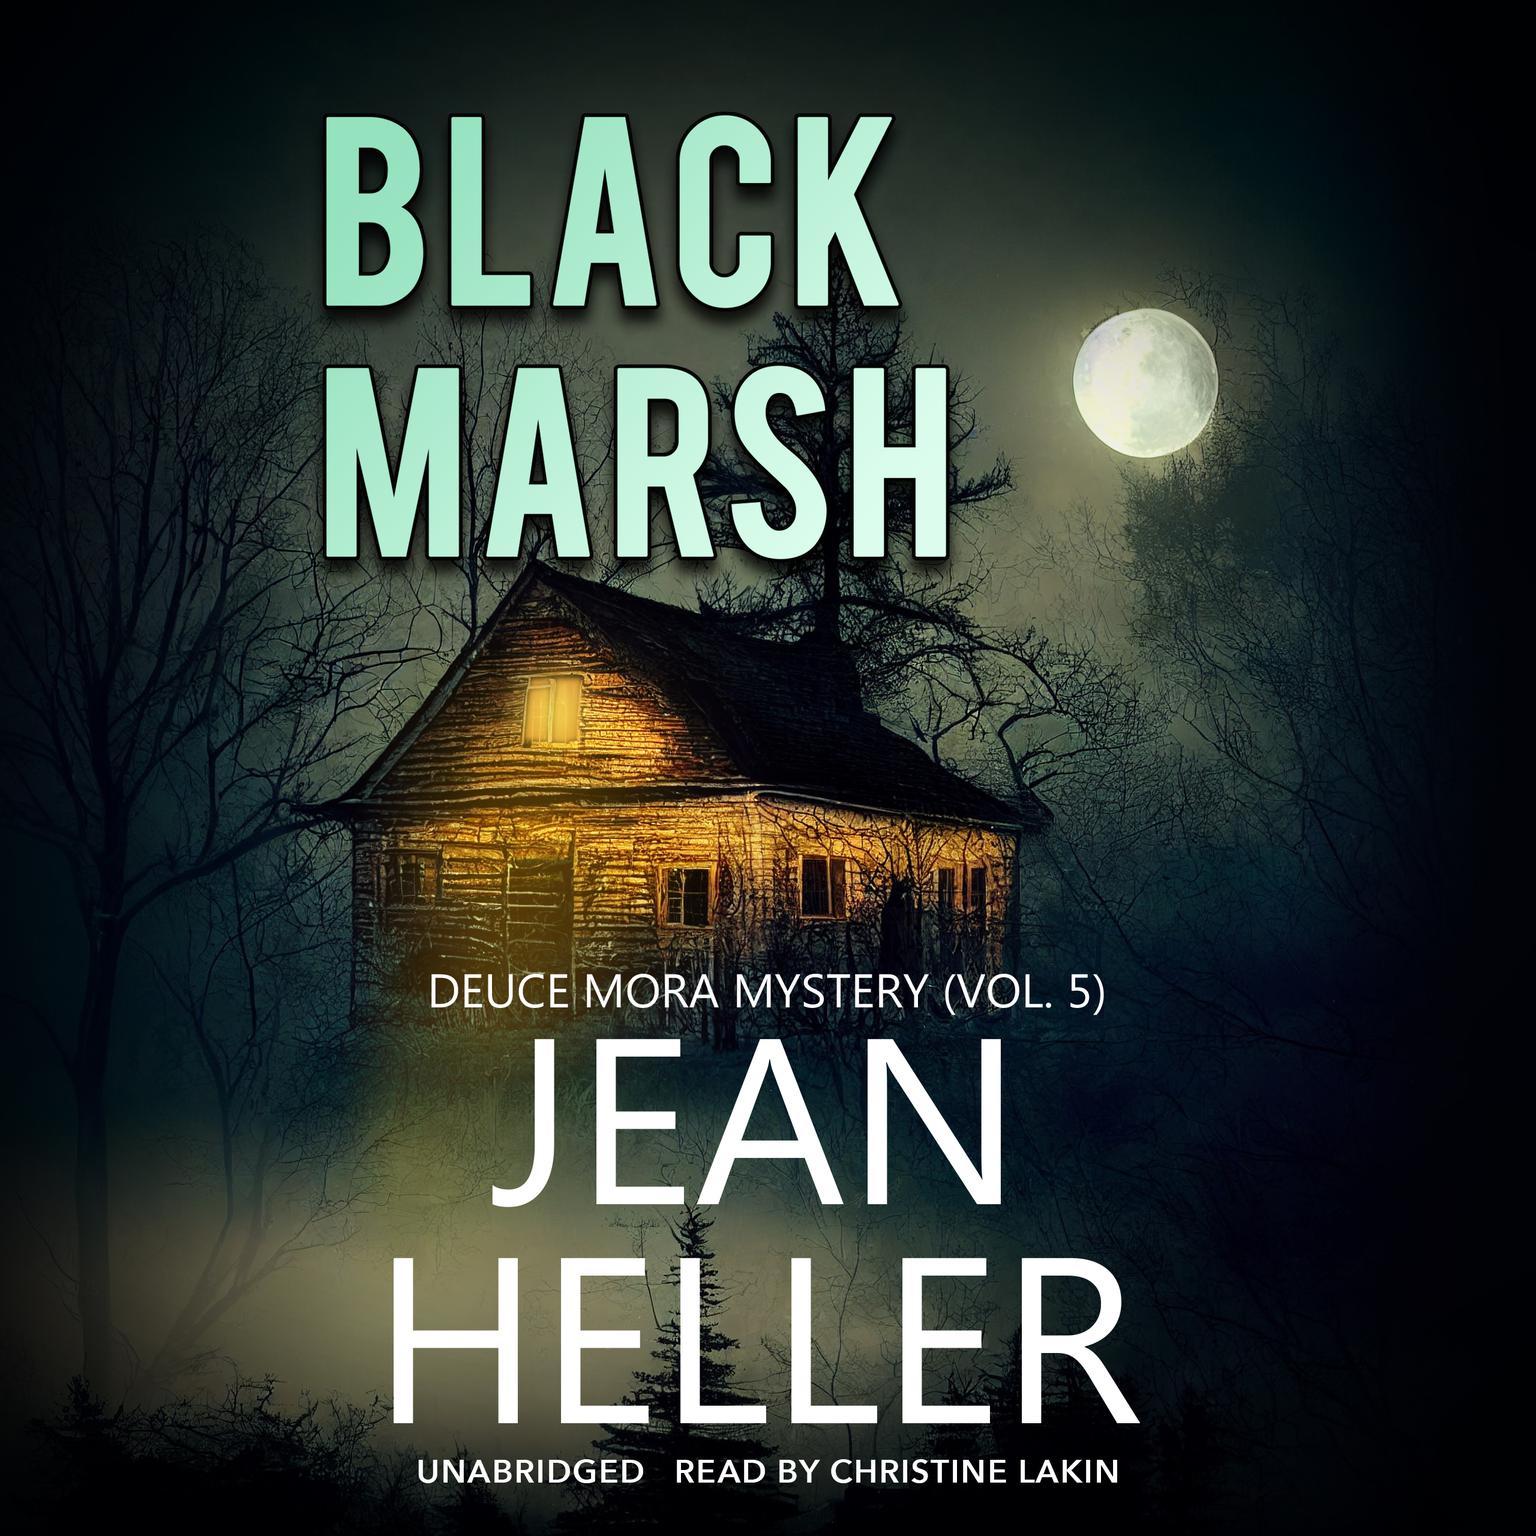 Black Marsh Audiobook, by Jean Heller